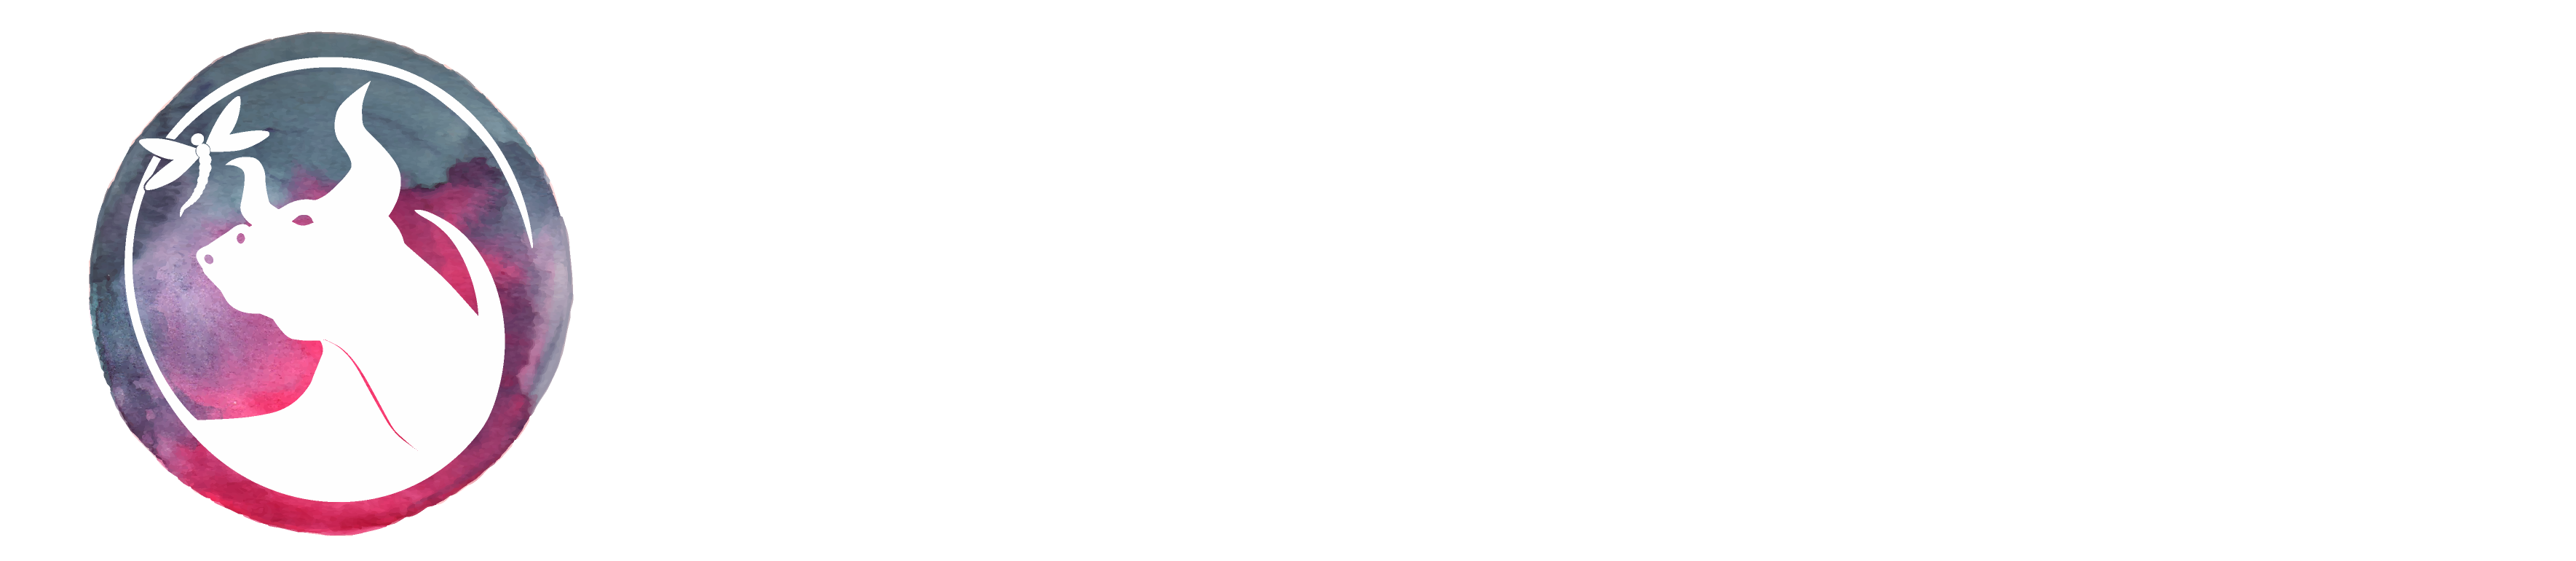 Dragonfly Bookworks